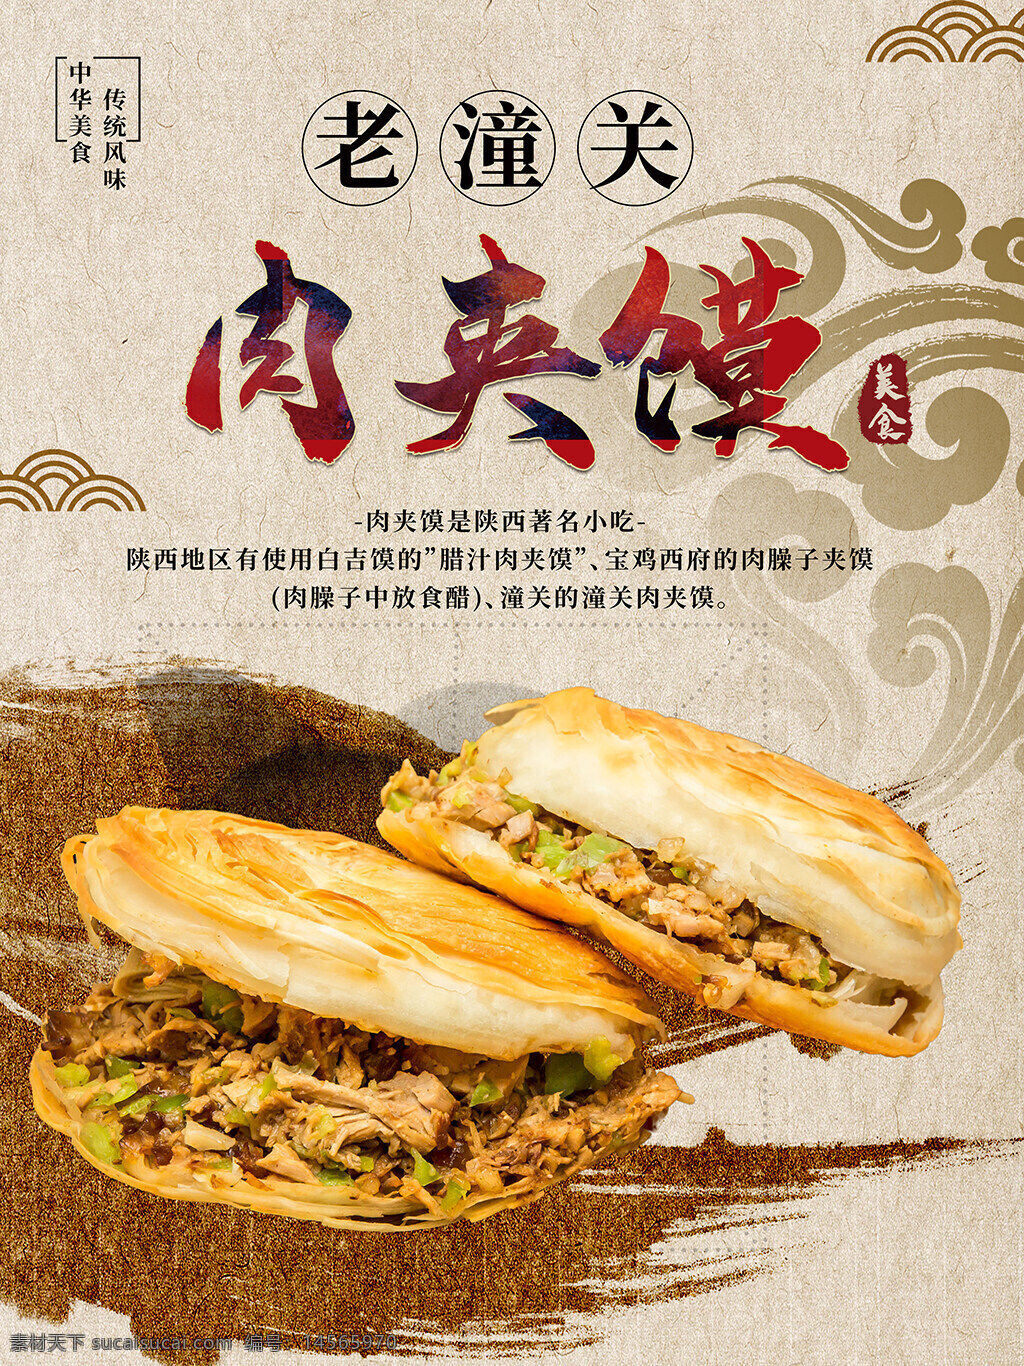 餐厅 餐饮 创意 海报 简约 美食 美食海报 肉夹馍 肉夹馍餐厅海报 中国风